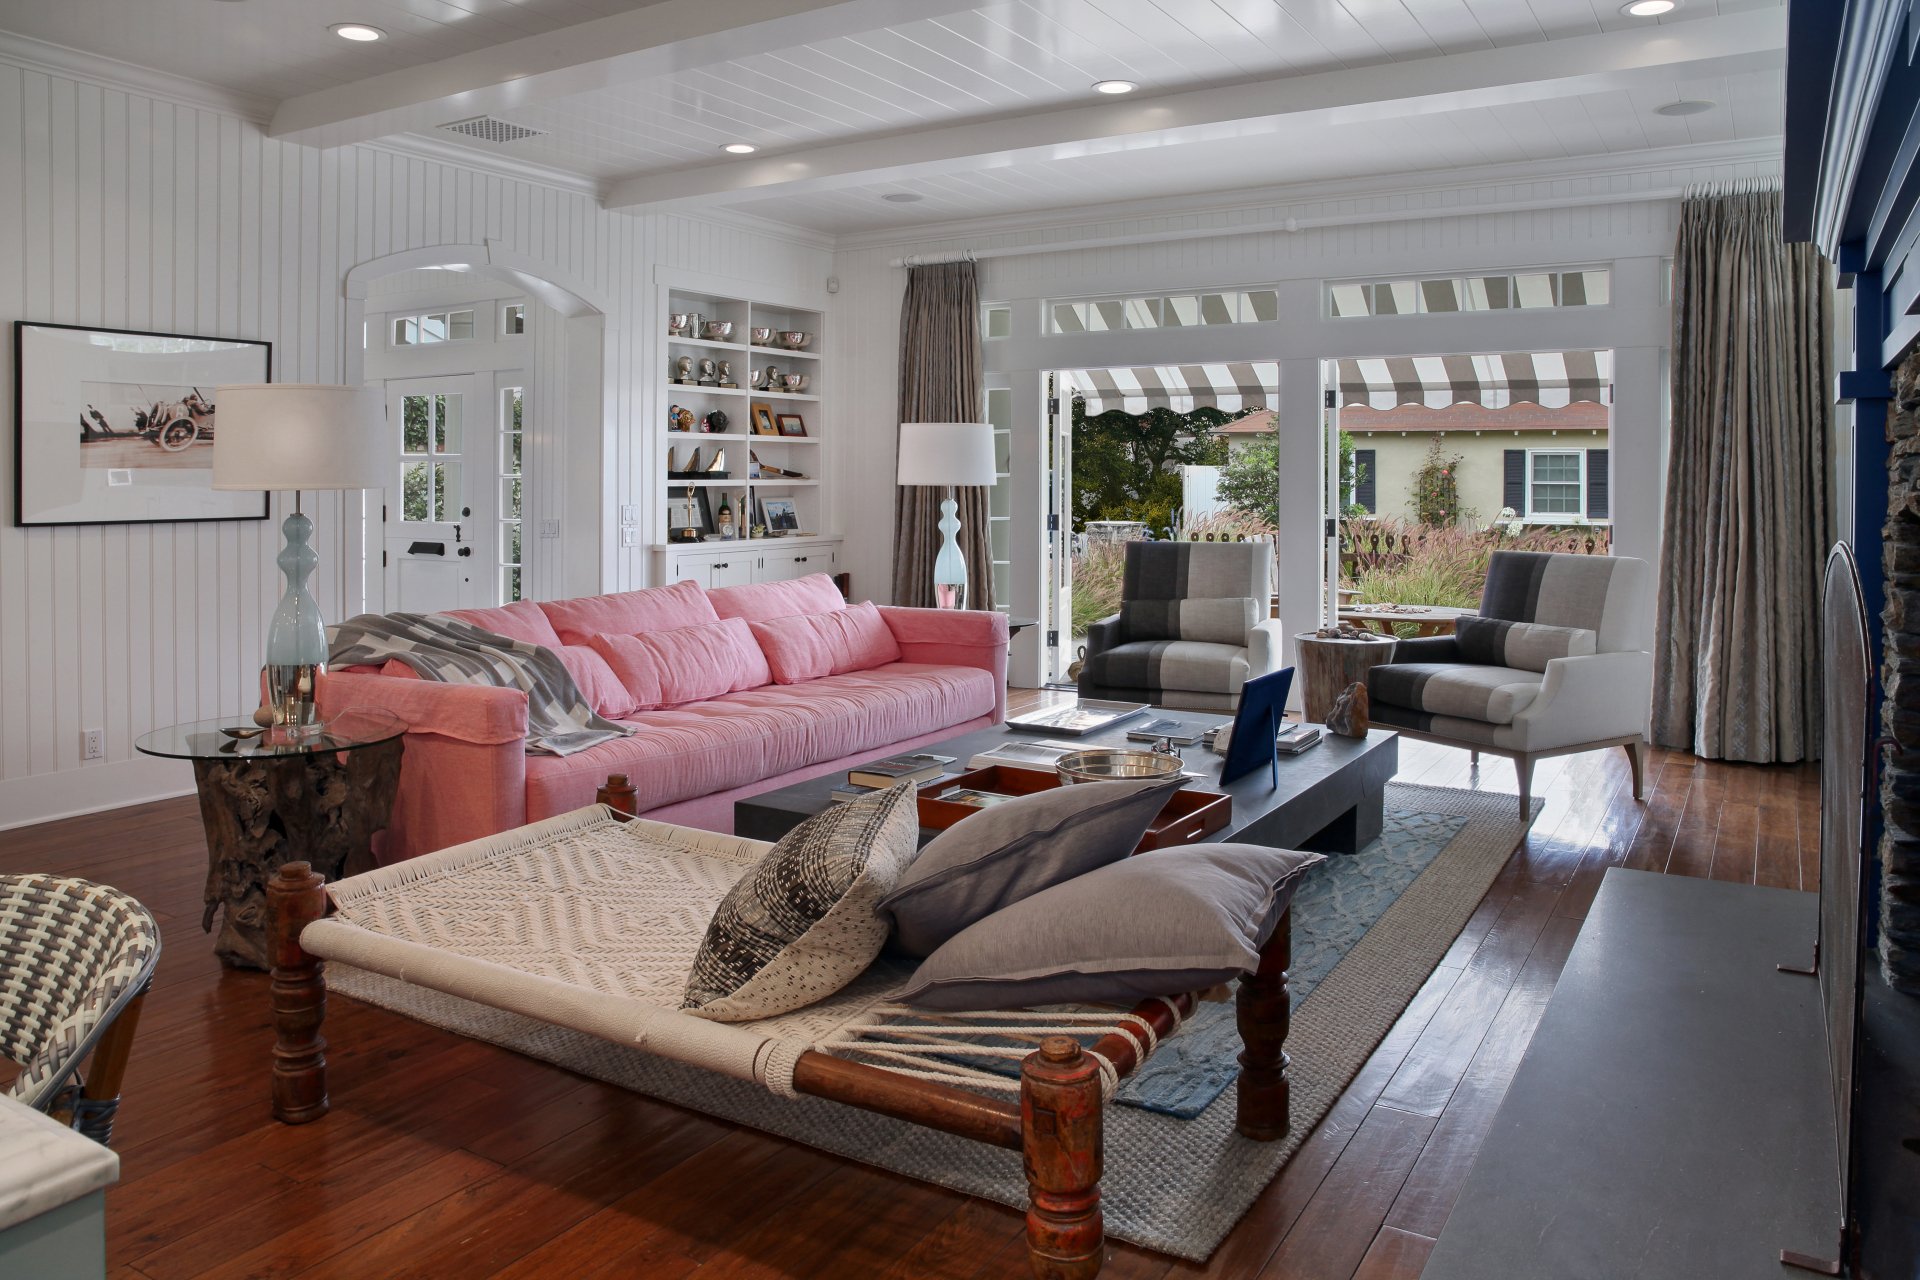 Room rooms разница. Розовый диван в интерьере. Sitting Room и Living Room разница. Диван с подушками разных размеров. Картинки 4к интерьер.